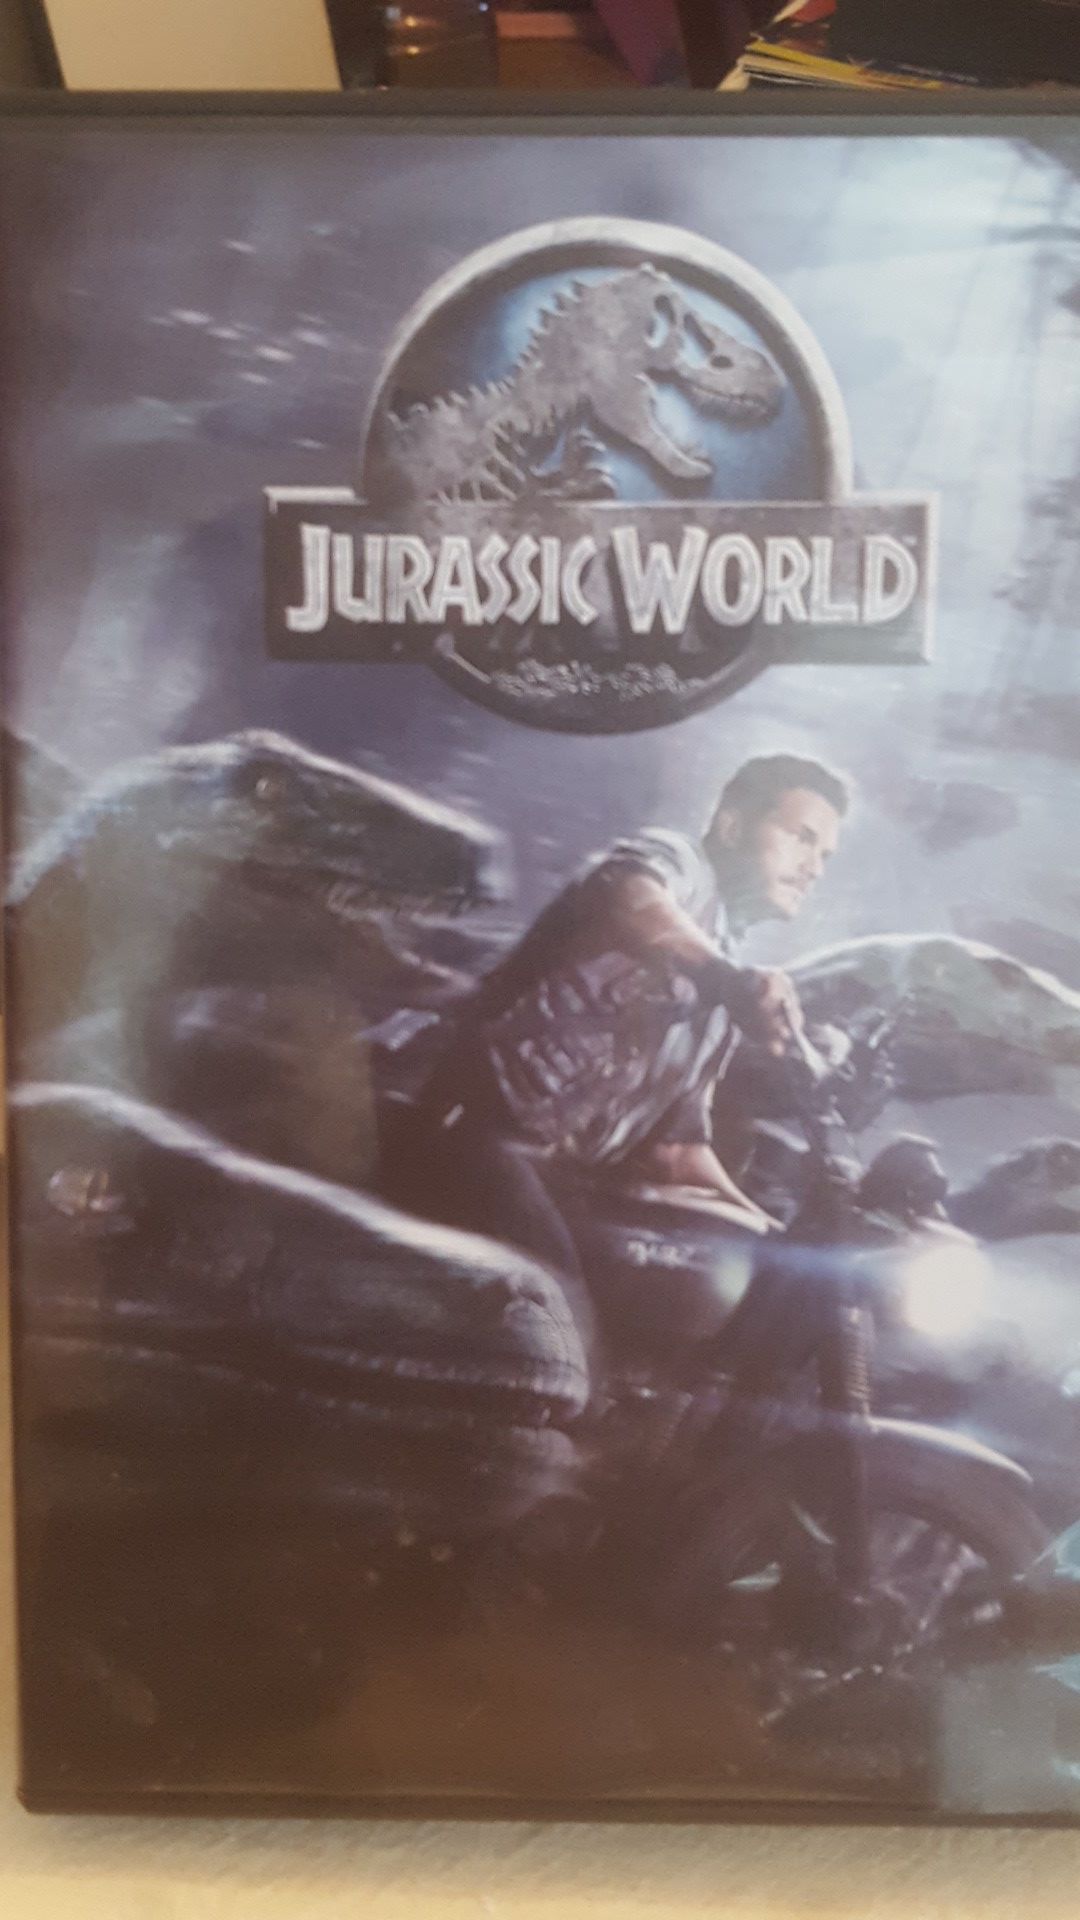 Jurassic World DVD movie